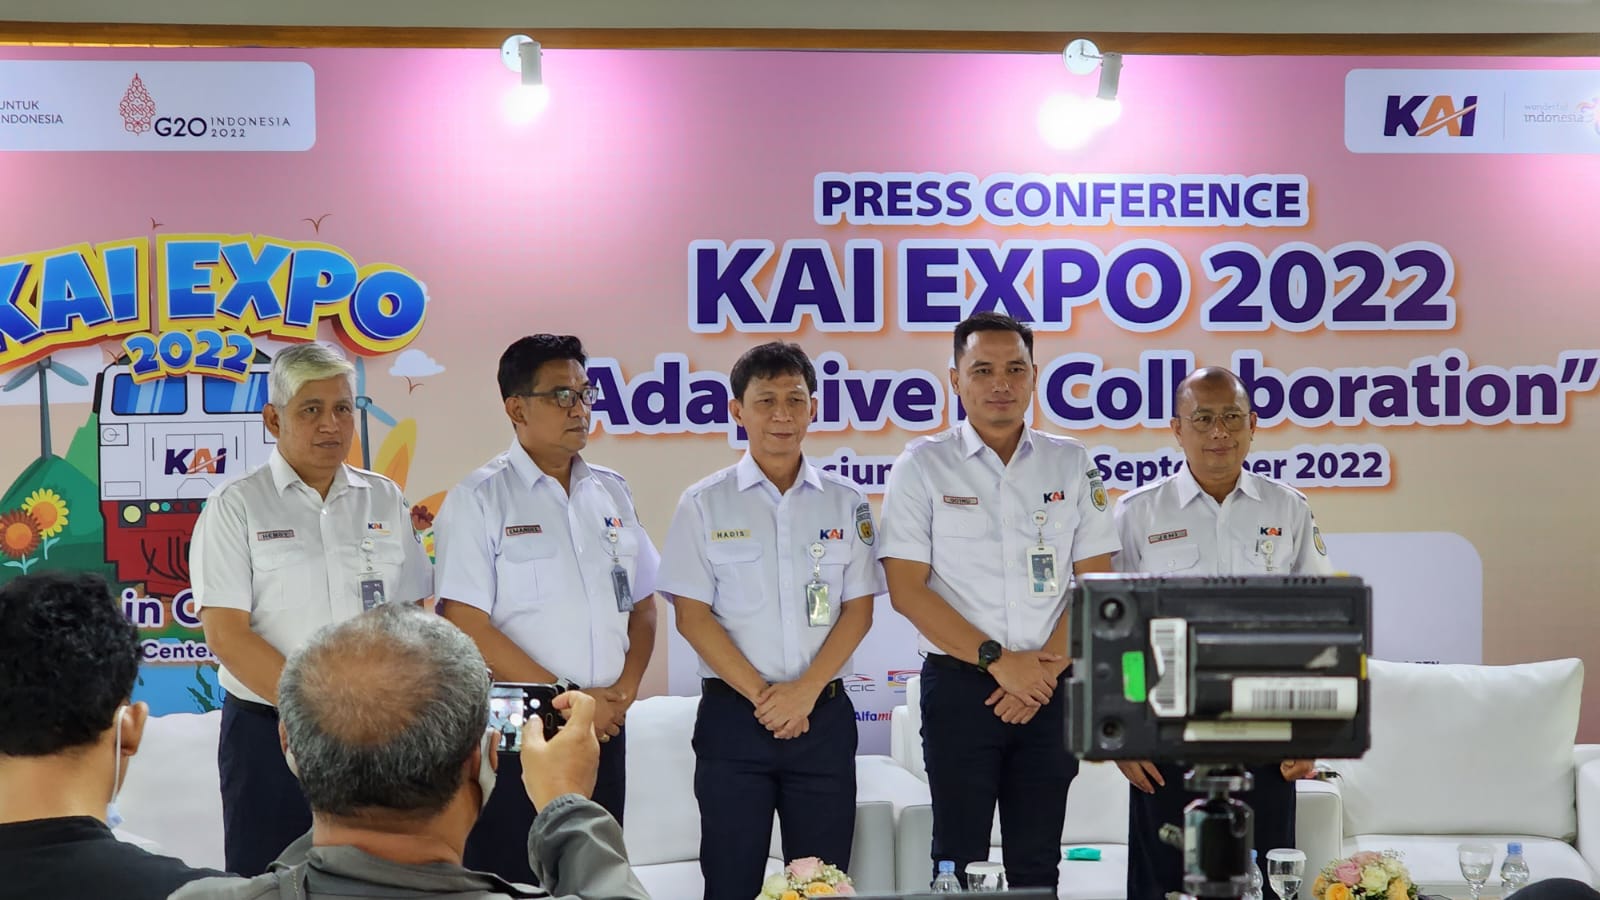 KAI Expo 2022 siap digelar, tawarkan 77 ribu tiket promo